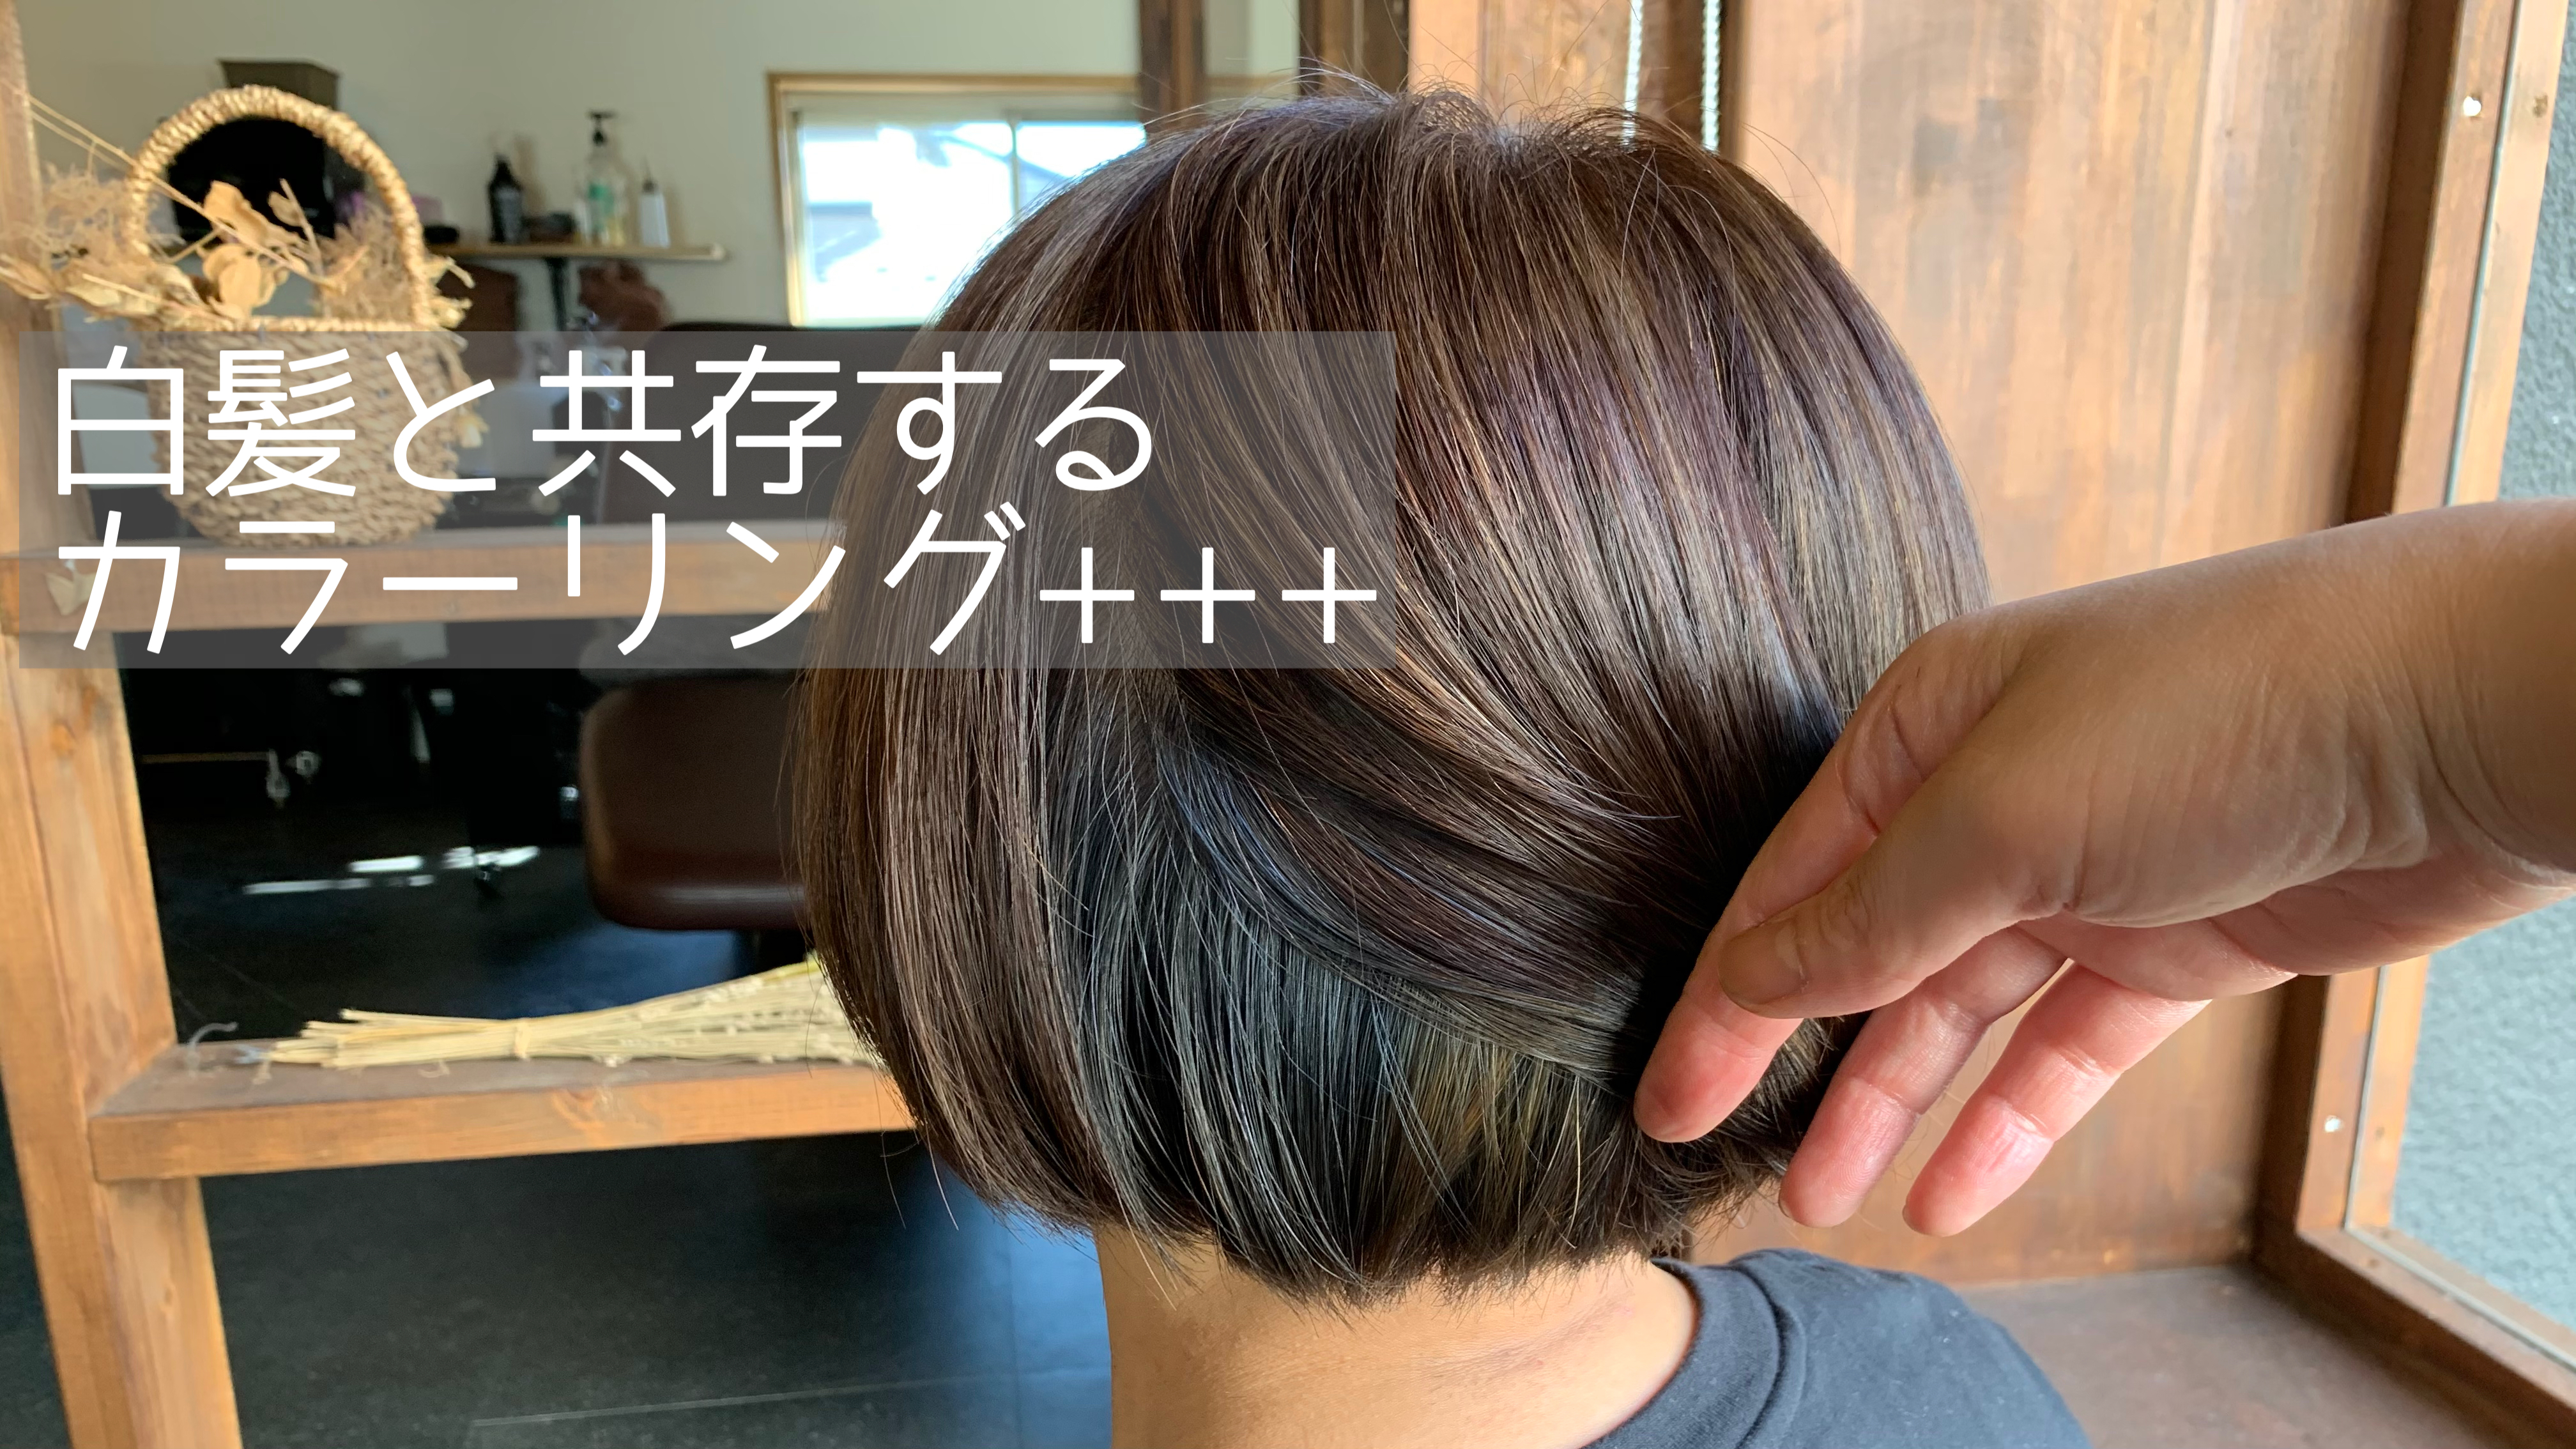 白髪を目立たせないハイライト インナーカラー ブリーチあり 共存するカラーリングのススメ Part2 くせ毛特化hair Designer Ryoco Sato の Blog